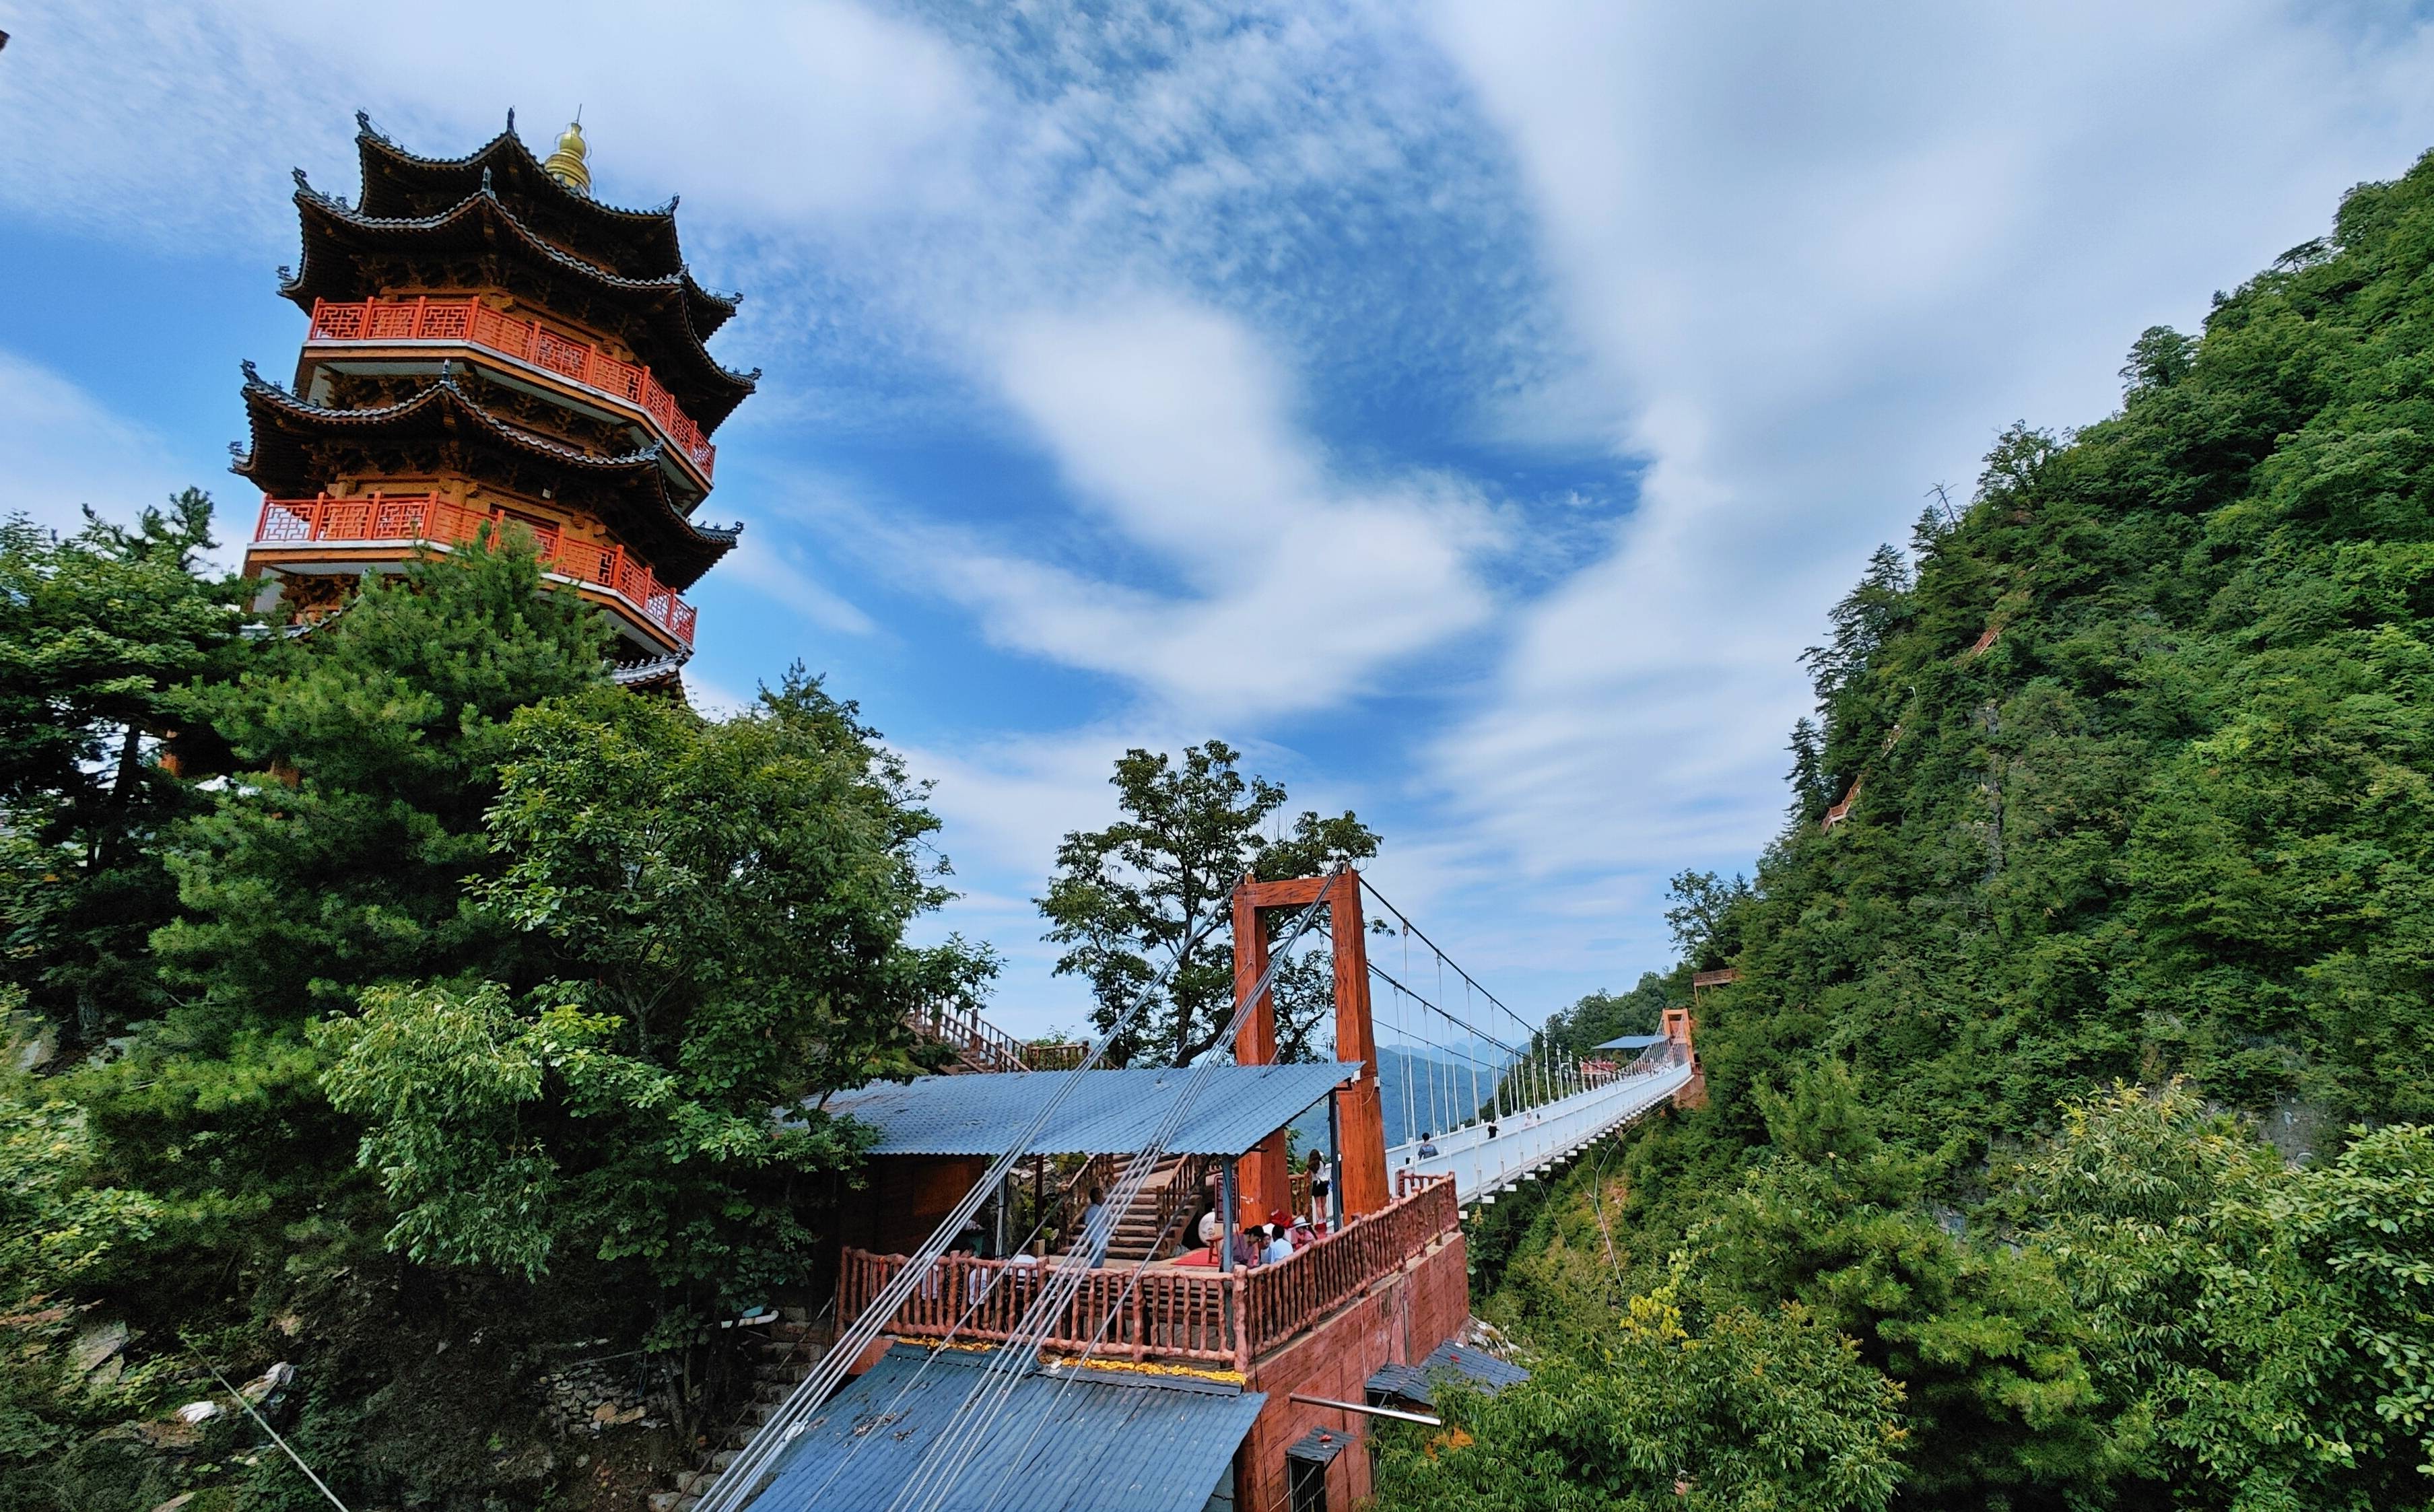 塔云山景区位于陕西省商洛市镇安县,是国家4a级旅游景区,被誉为秦岭